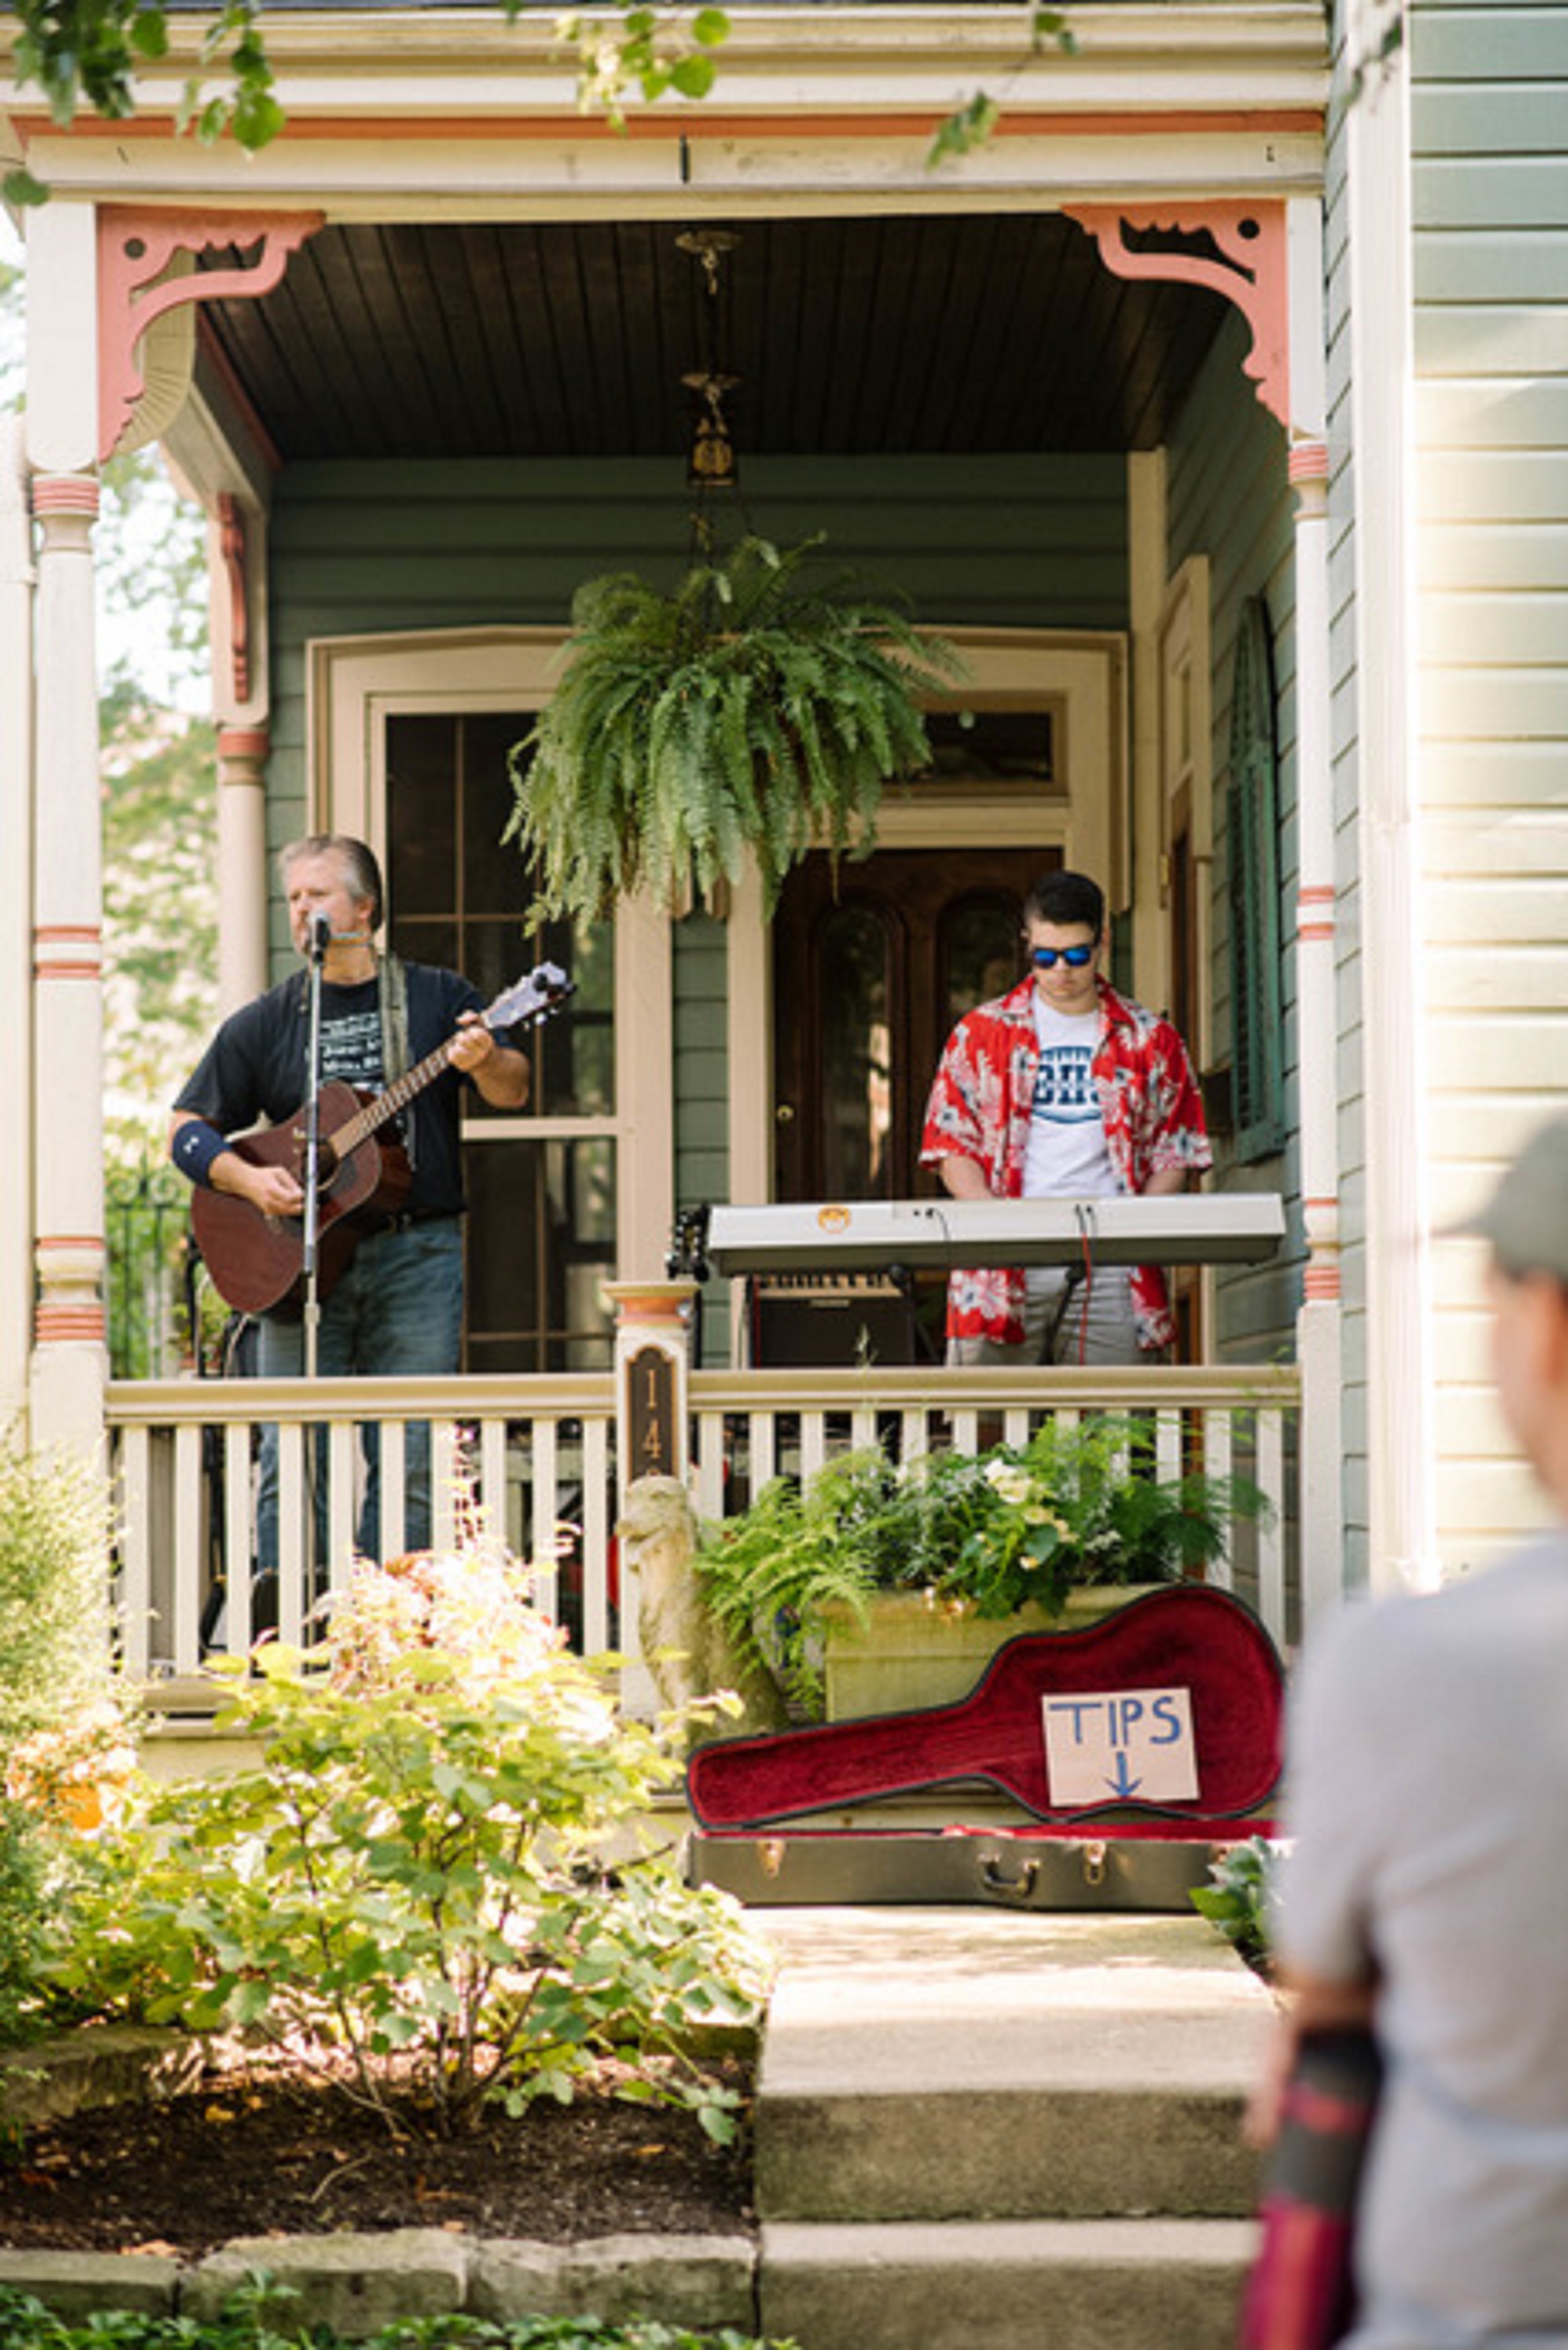 Το Collaboratory παρουσιάζει το Dayton Porchfest, το δημοφιλές φεστιβάλ που περιλαμβάνει μια ποικιλία από τοπικές μουσικές παραστάσεις σε βεράντες, αίθρια και γρασίδι των συμμετεχόντων σπιτιών σε όλη την ιστορική γειτονιά St. Anne's Hill το Σάββατο, 20 Αυγούστου.